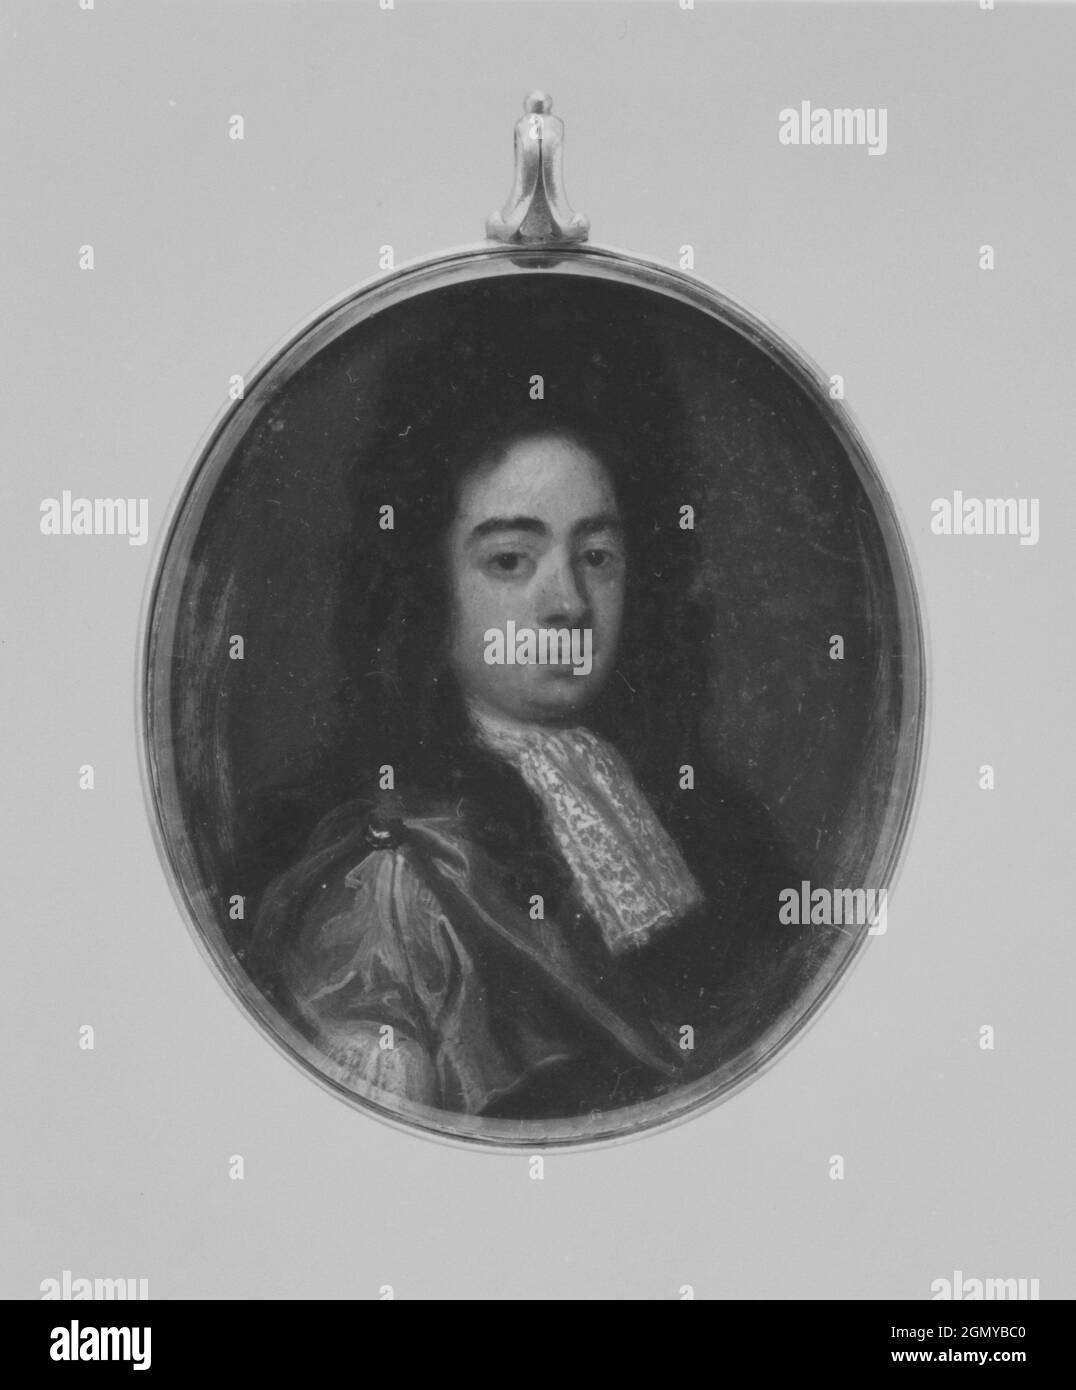 Retrato de un hombre. Artista: British Painter (ca. 1690); Medio: Aceite sobre cobre; Dimensiones: Ovalado, 2 3/8 x 2 pulg. (60 x 50 mm); Clasificación: Miniaturas Foto de stock